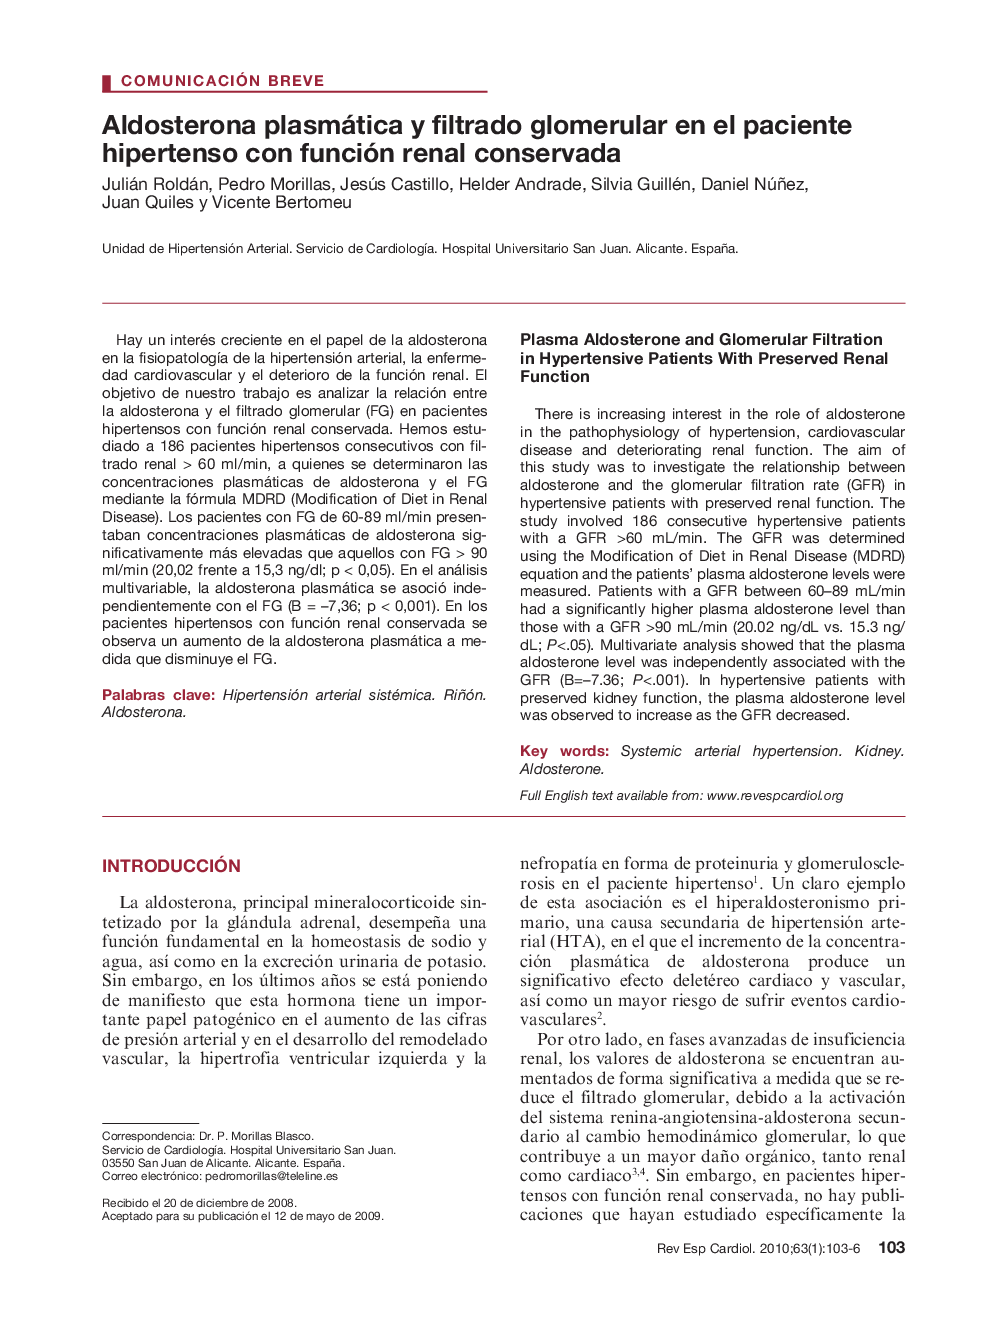 Aldosterona plasmática y filtrado glomerular en el paciente hipertenso con función renal conservada